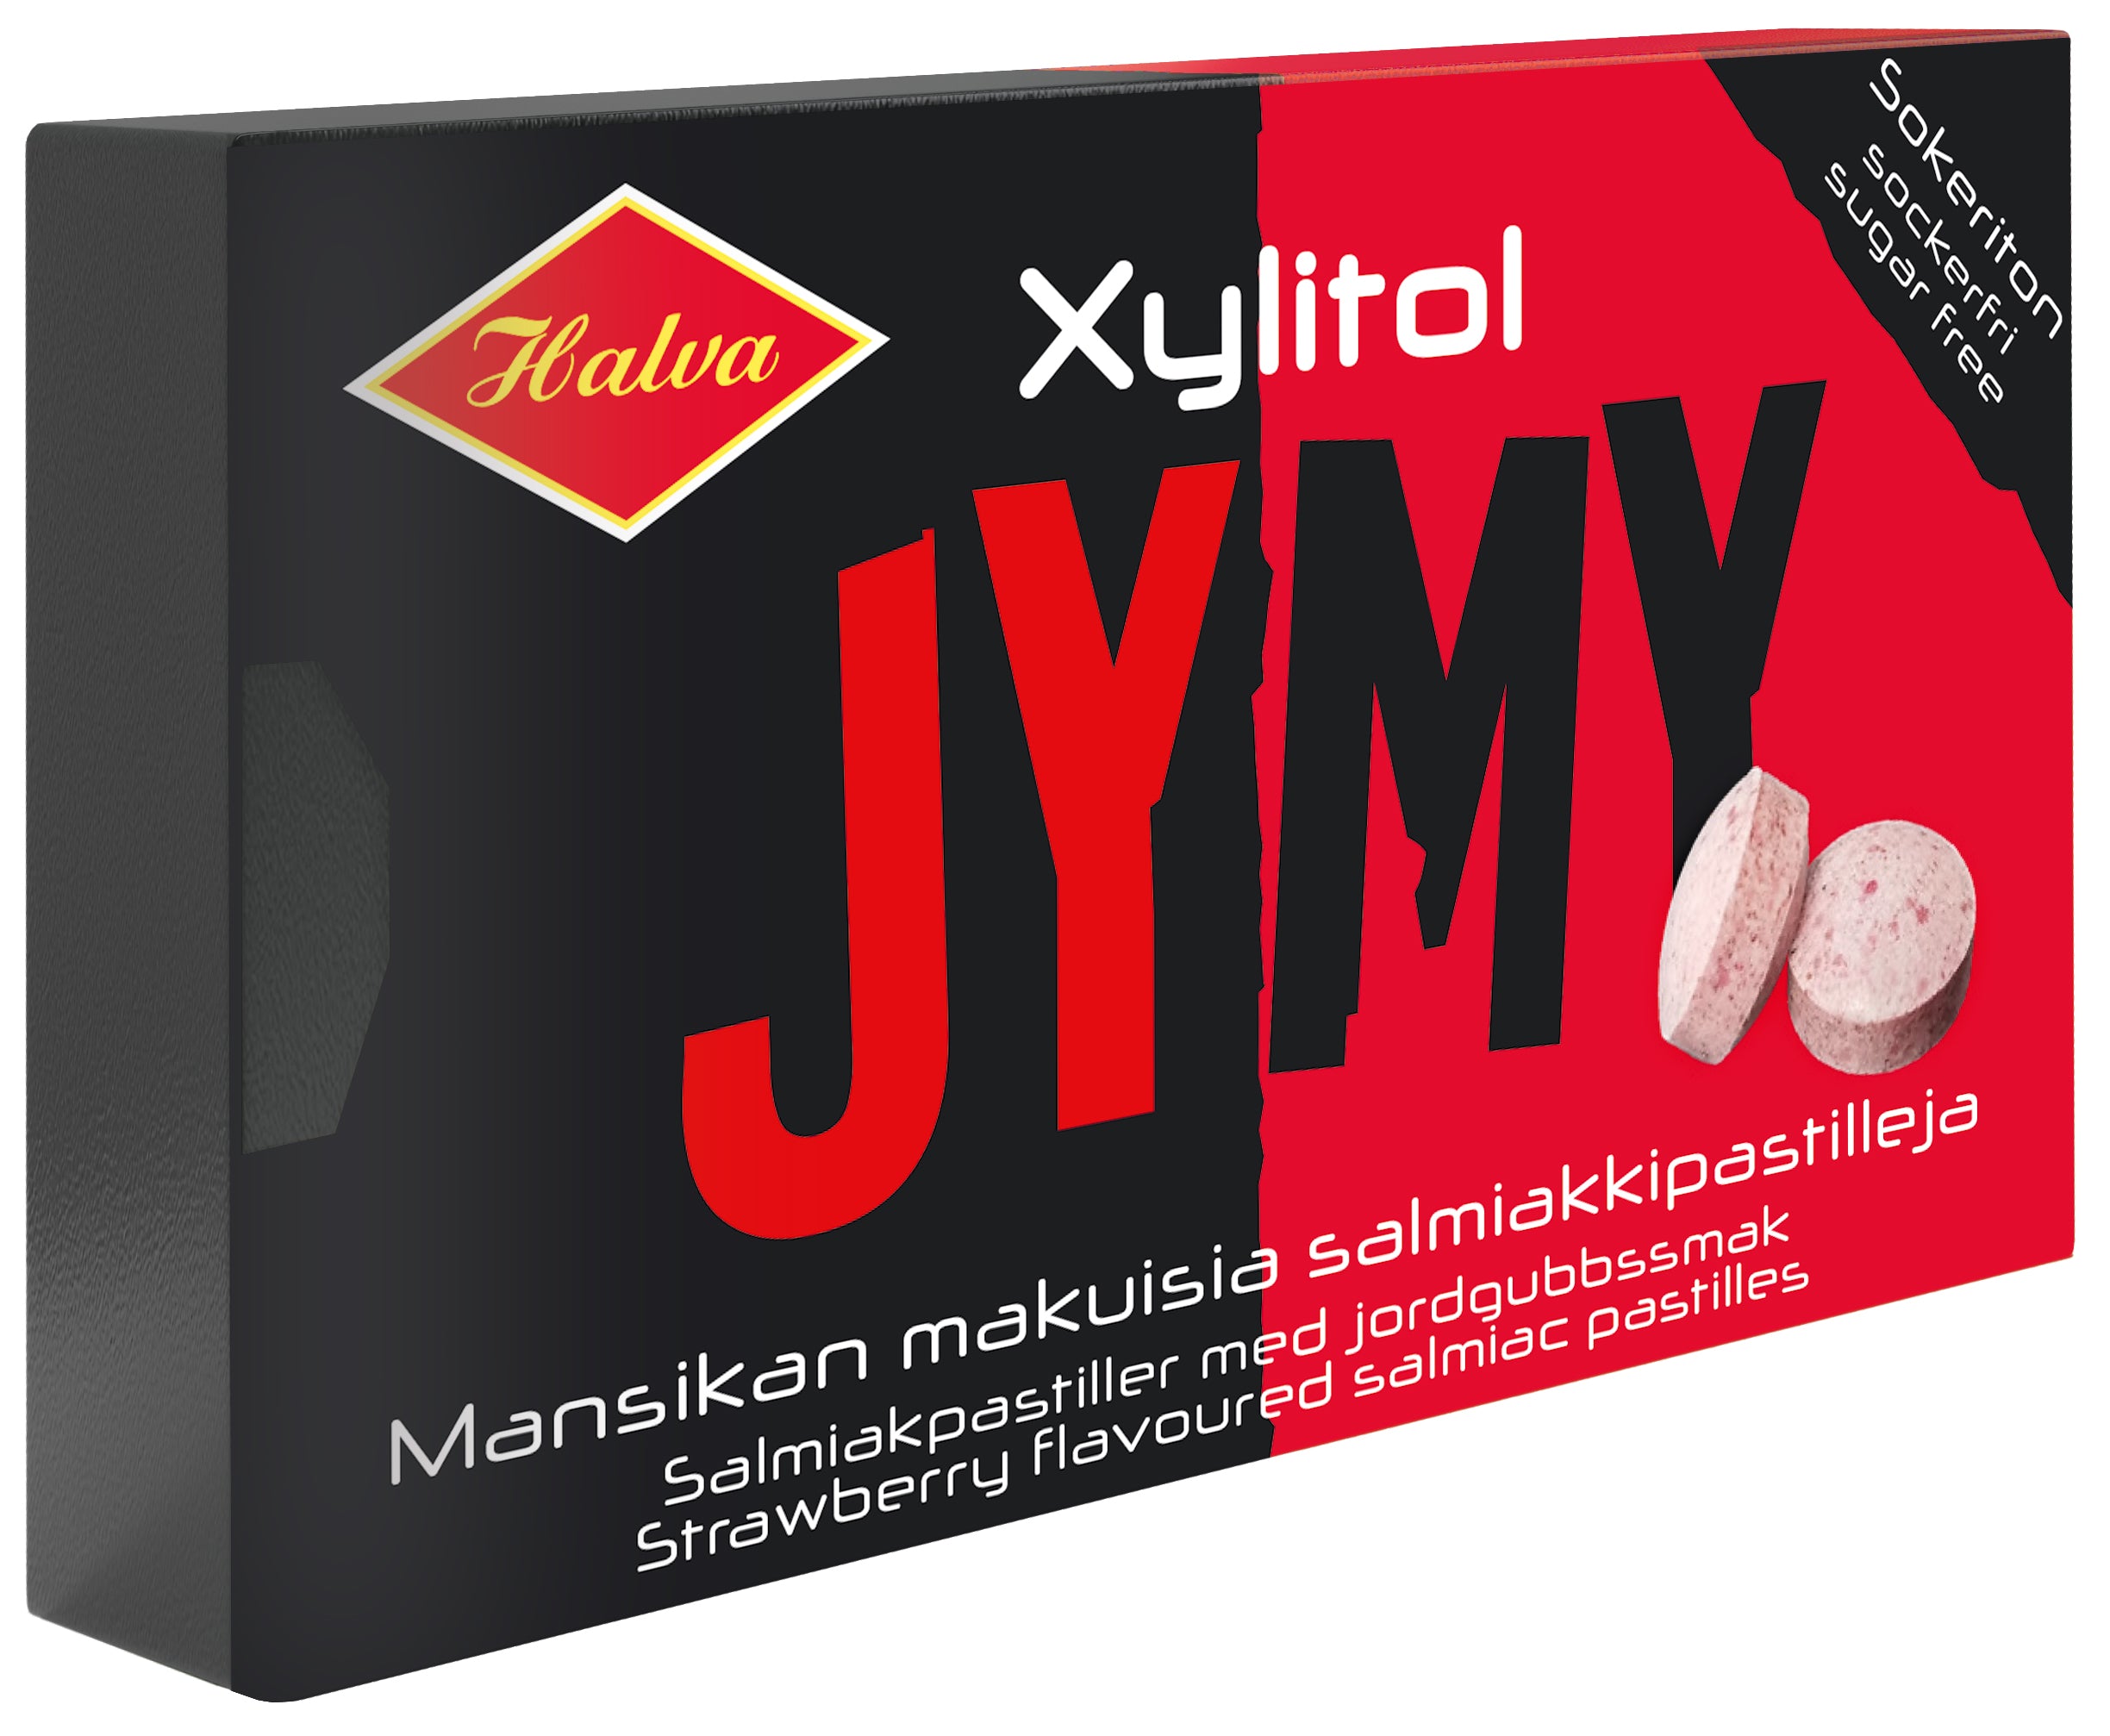 Halva Jymy Xylitol Strawberry flavoured salmiac pastilles 30 g